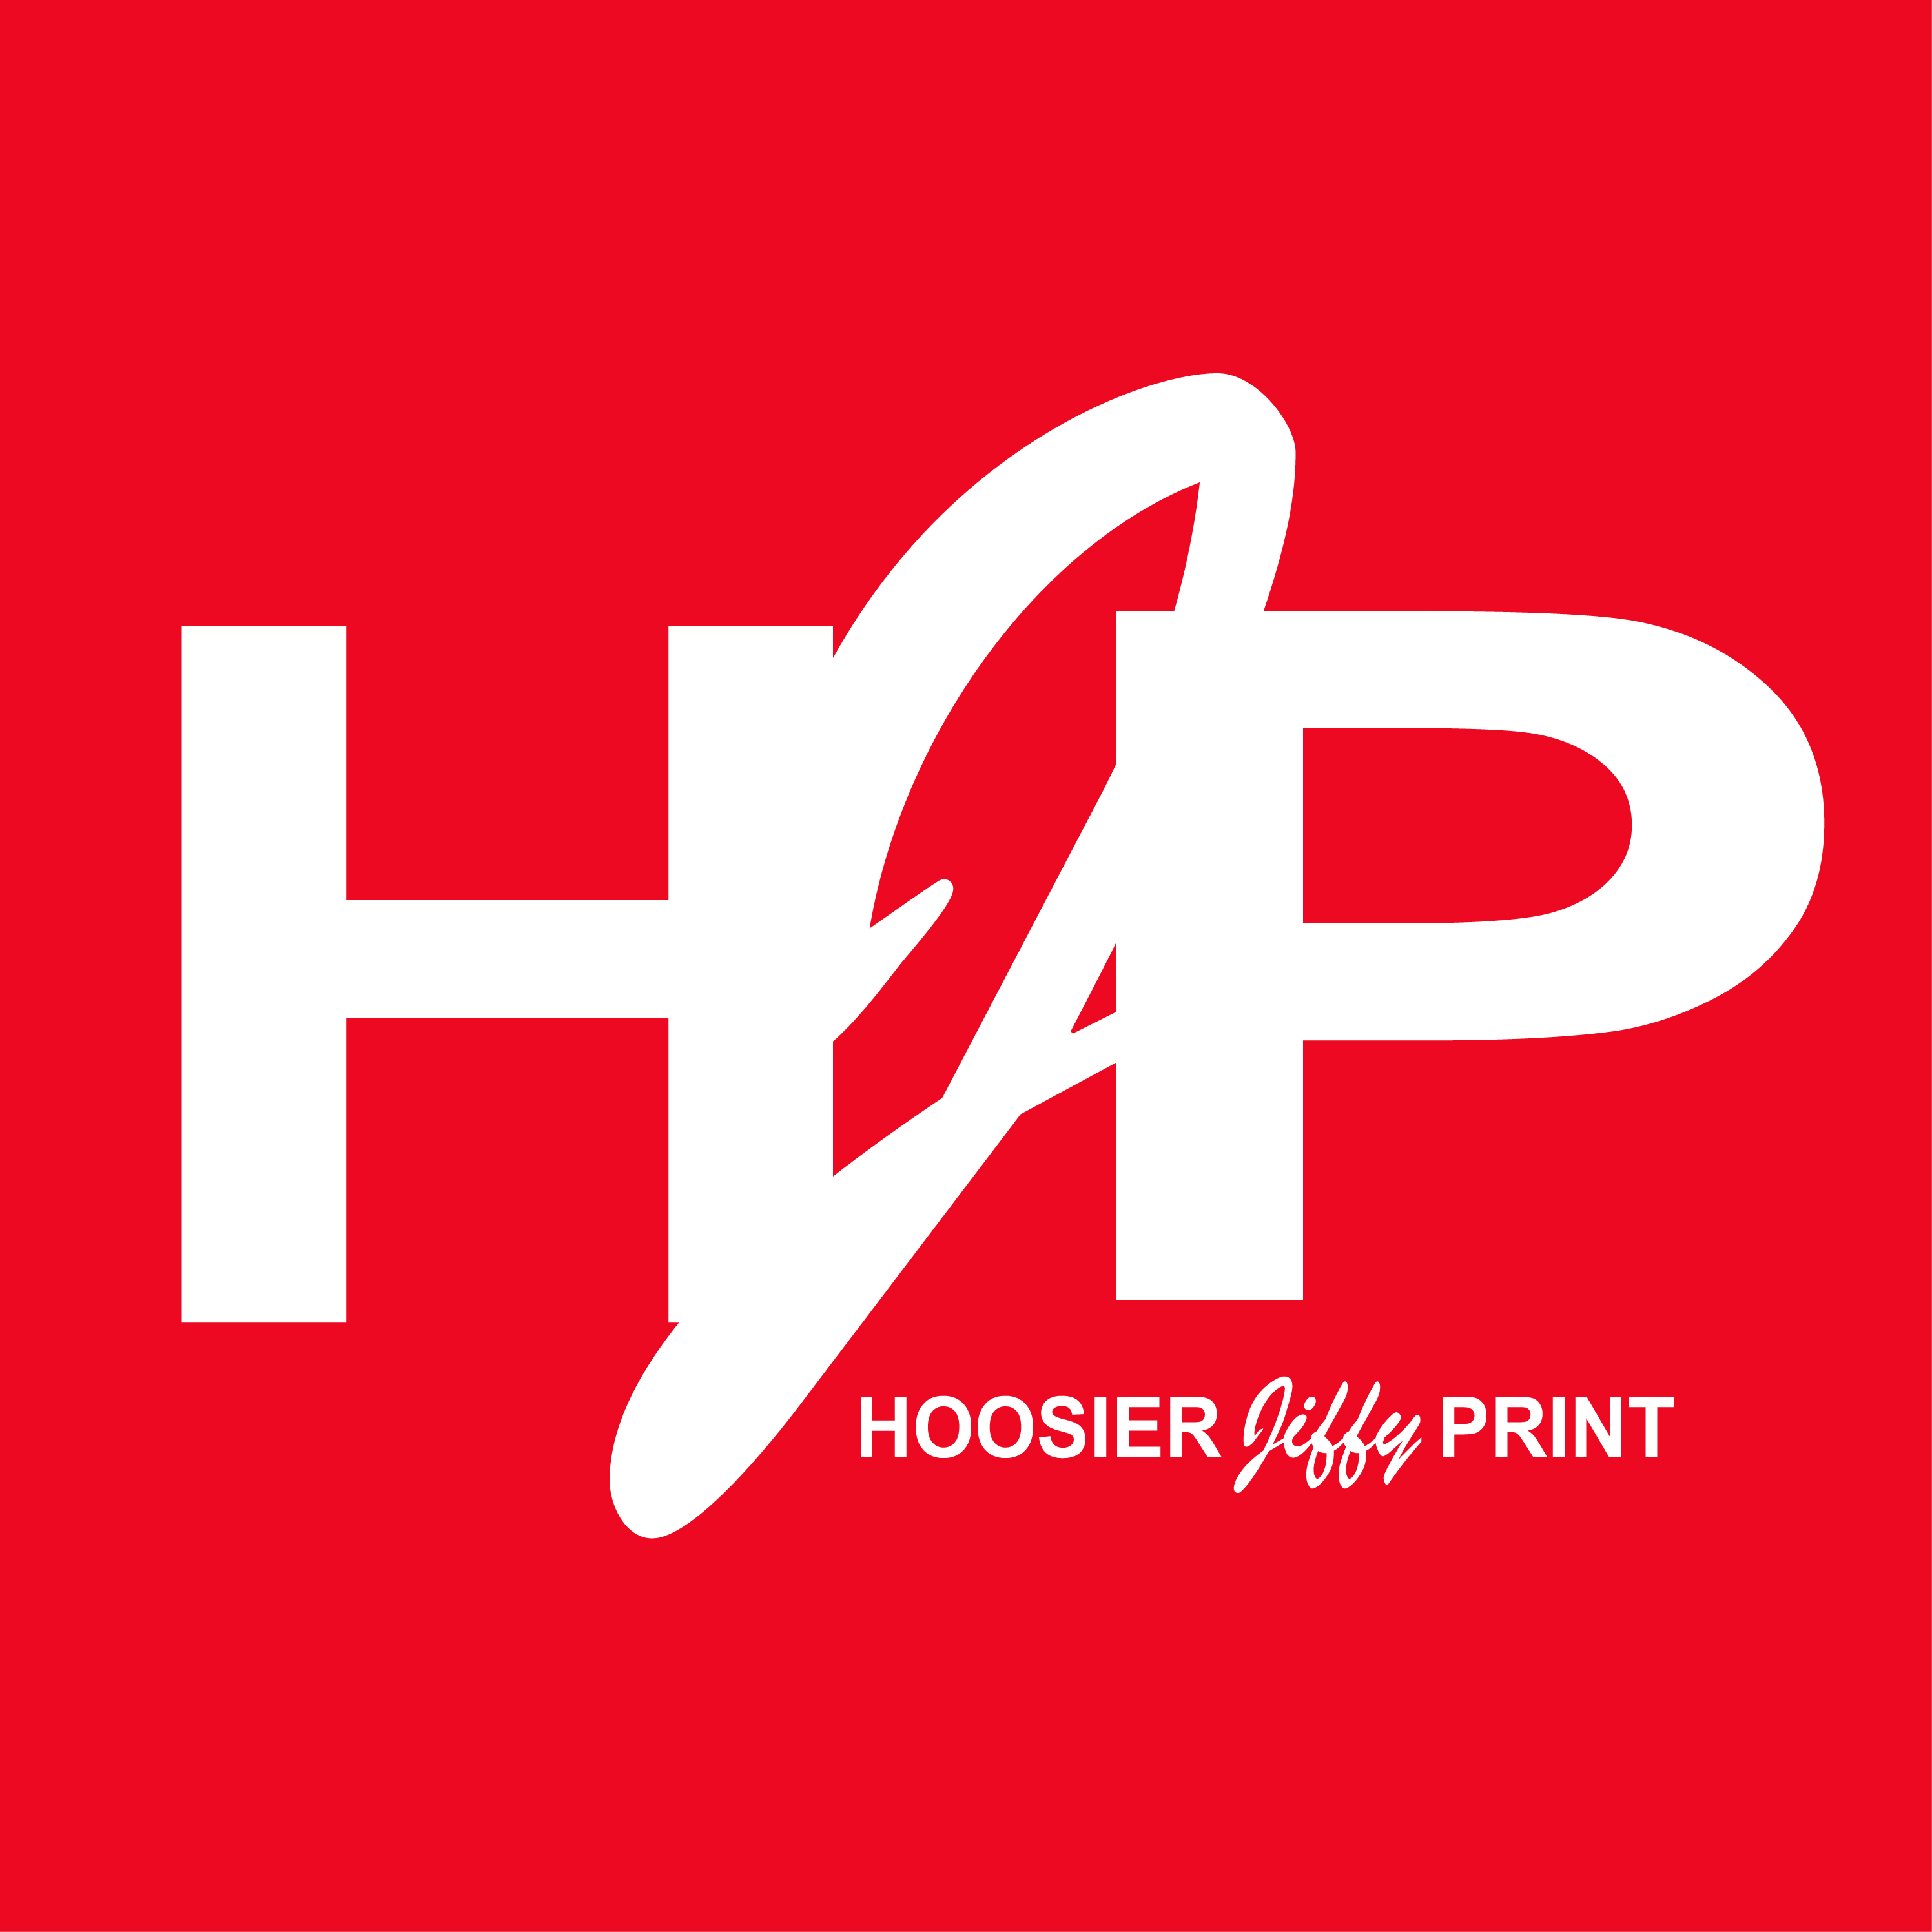 Hoosier Jiffy Print